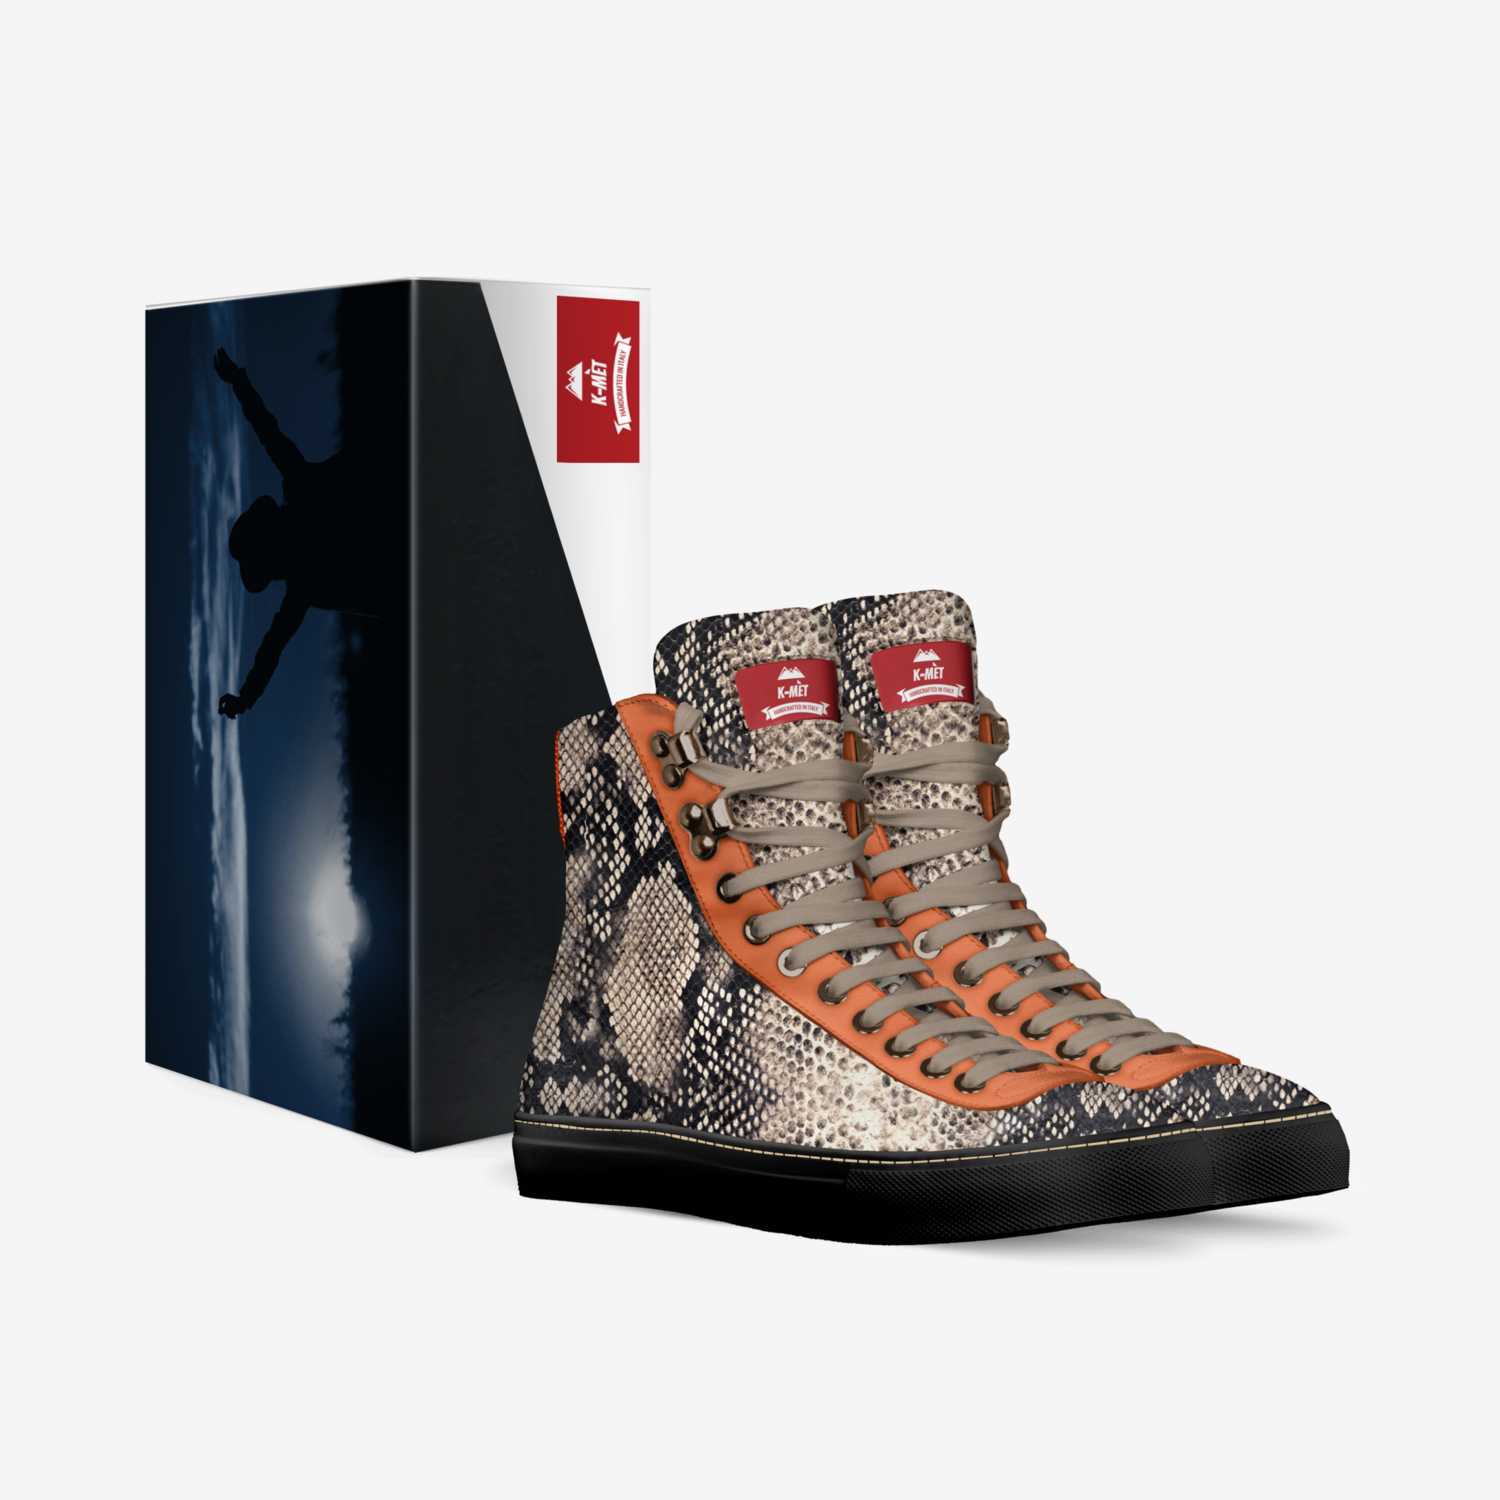 K-Met  custom made in Italy shoes by Felix Sainte | Box view